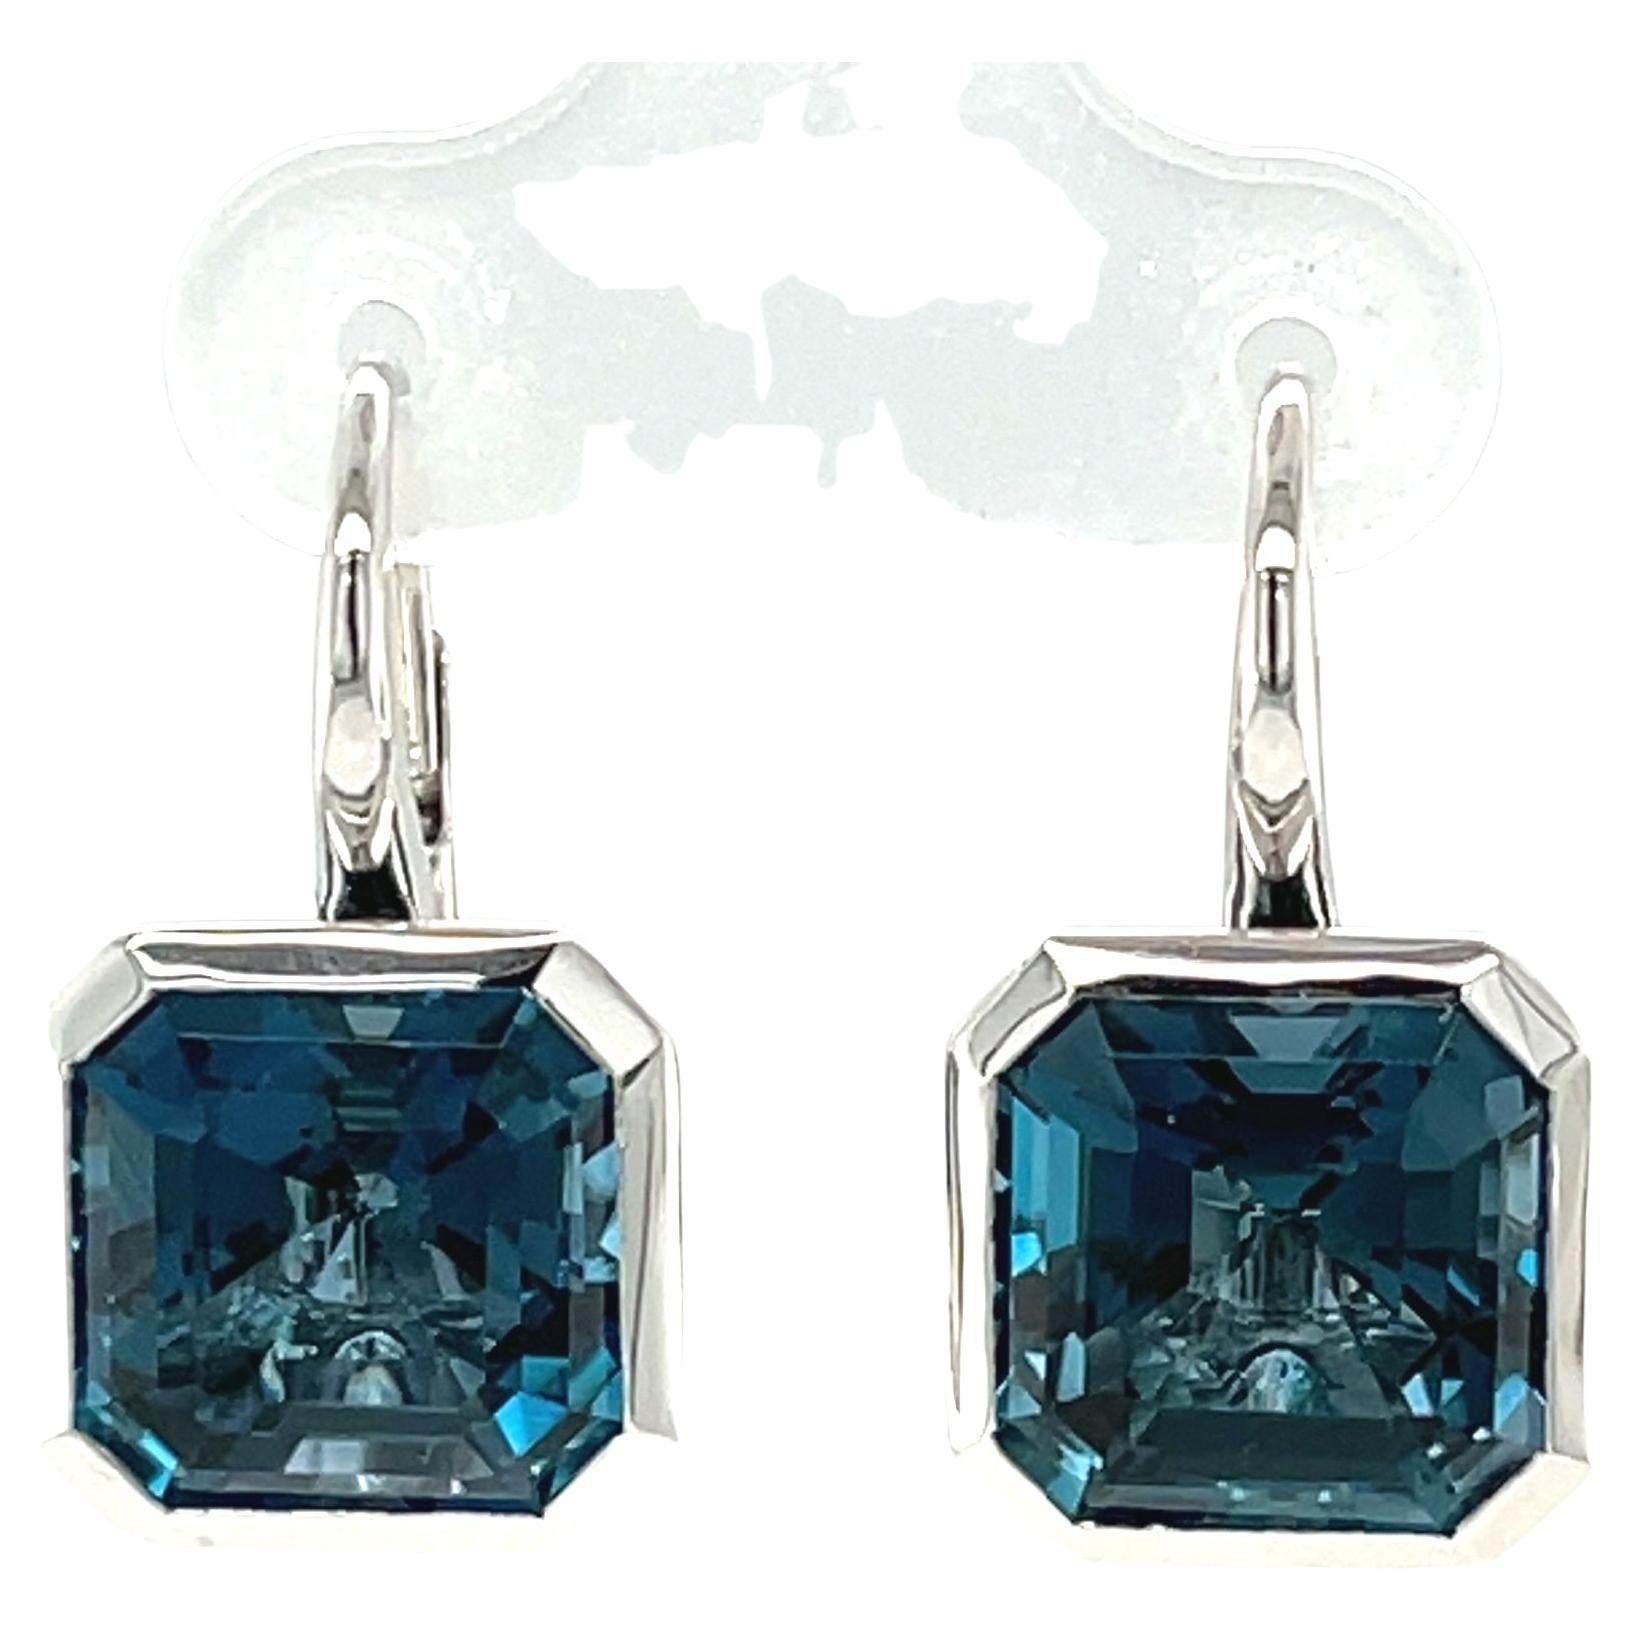 Dieses Paar wunderschöner Londoner Blautopas-Ohrringe ist die perfekte Ergänzung für Ihre Tages- und Abendgarderobe! 